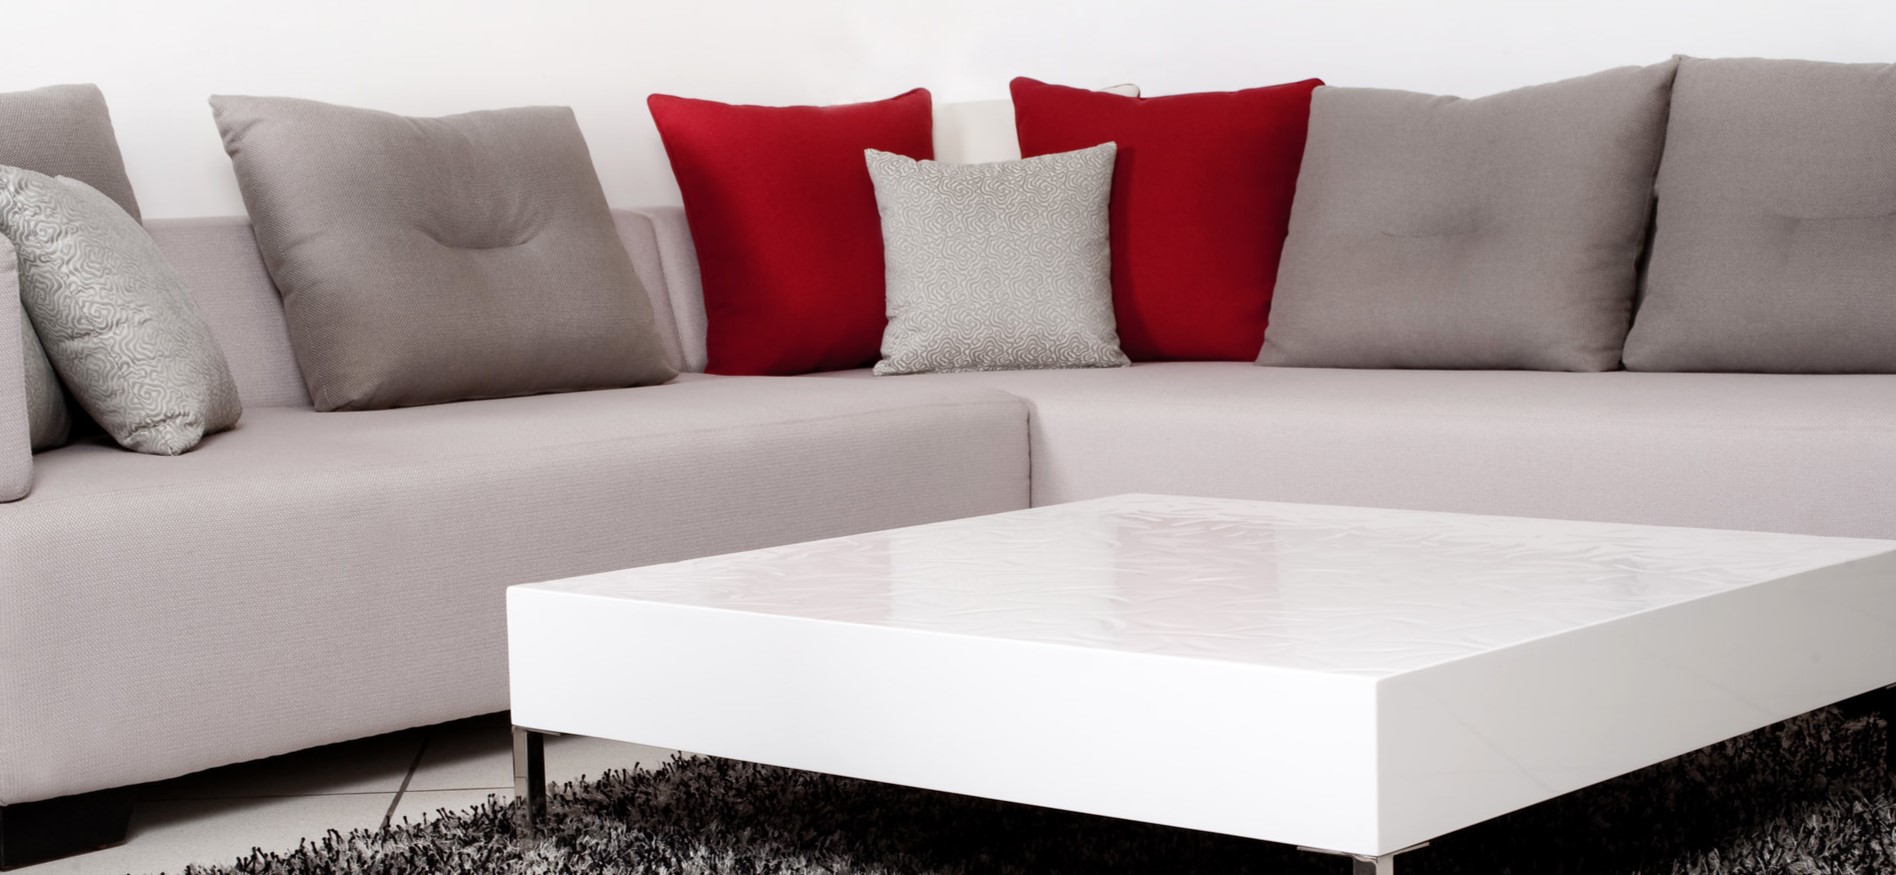 Если в гости часто приходят друзья, можно приобрести крупный угловой диван